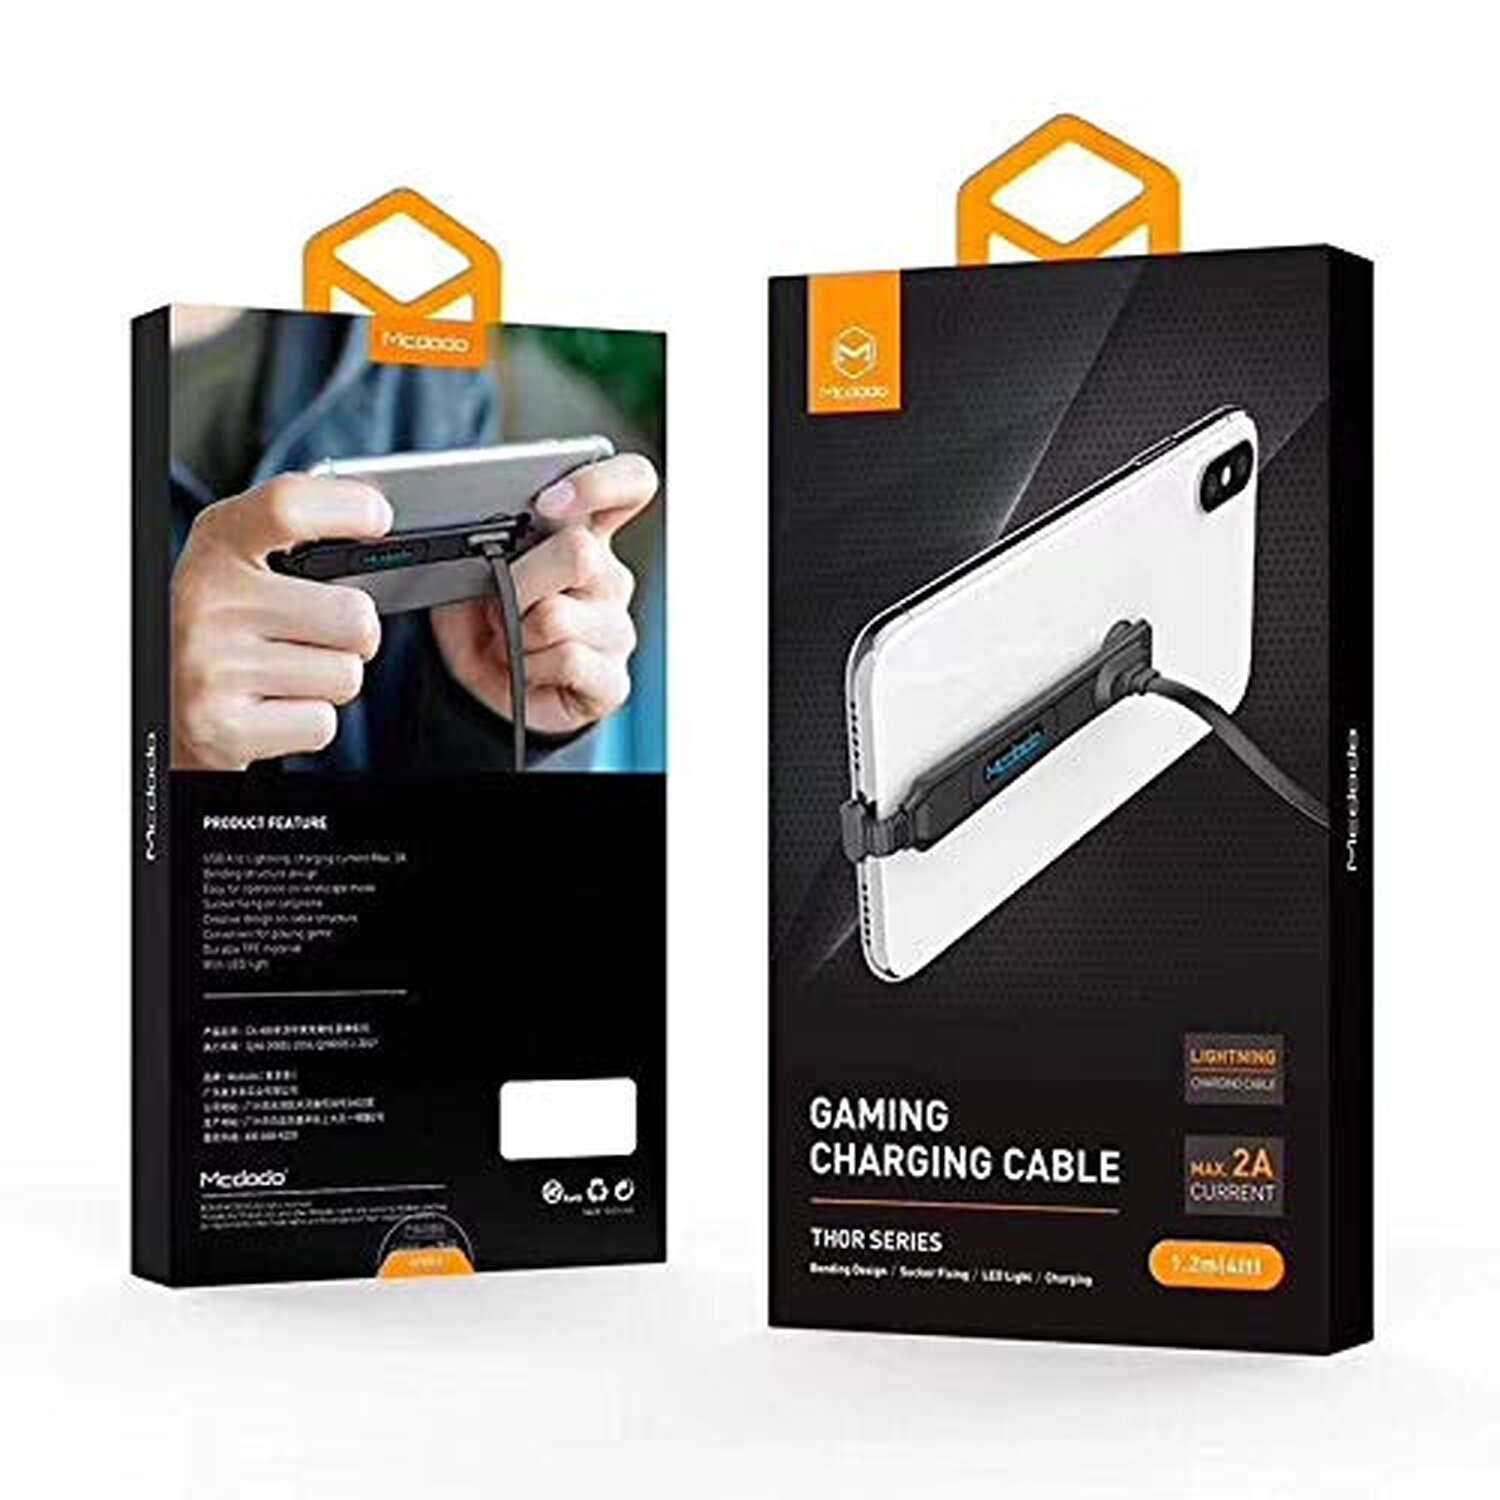 Schwarz Gaming Kabel, 1.8m iOS MCDODO Ladekabel, Thor Series